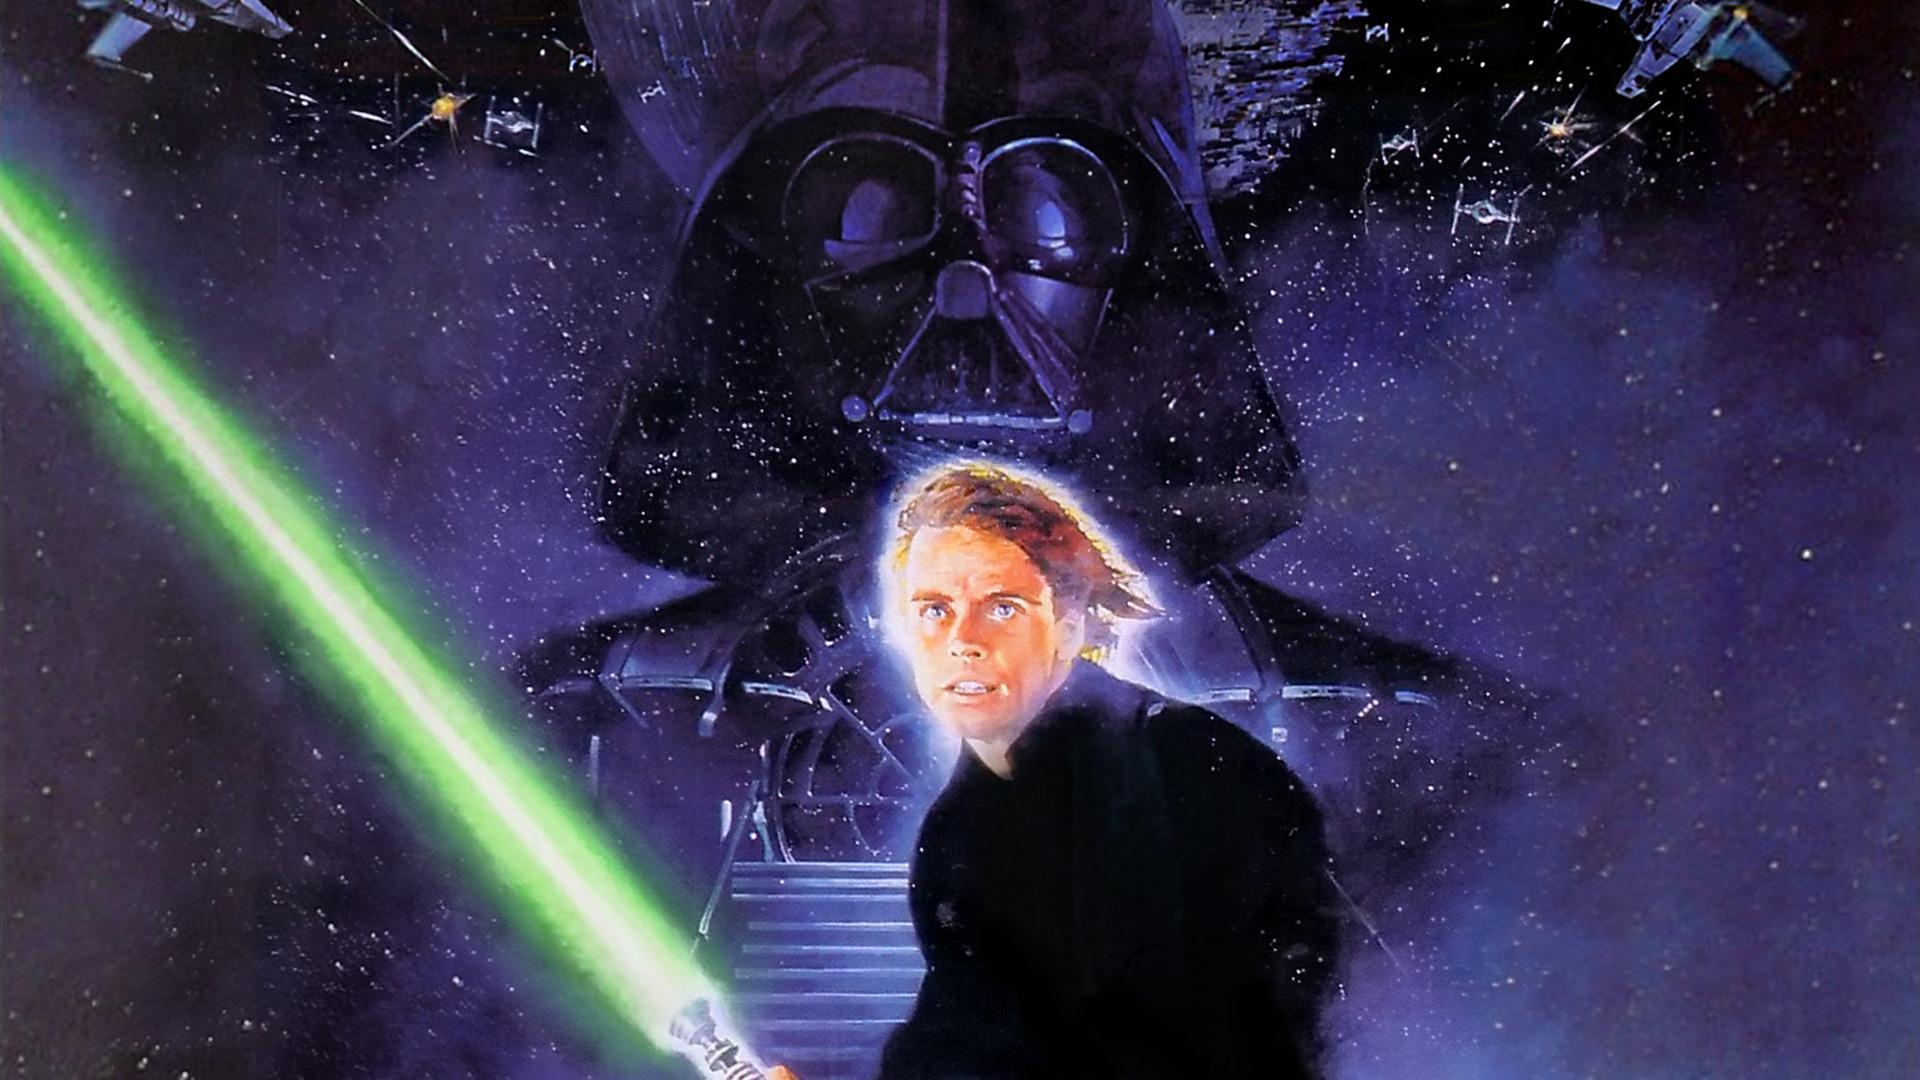 Mobile wallpaper Star Wars Lightsaber Movie Darth Vader Luke Skywalker  Star Wars Episode V The Empire Strikes Back 375063 download the picture  for free